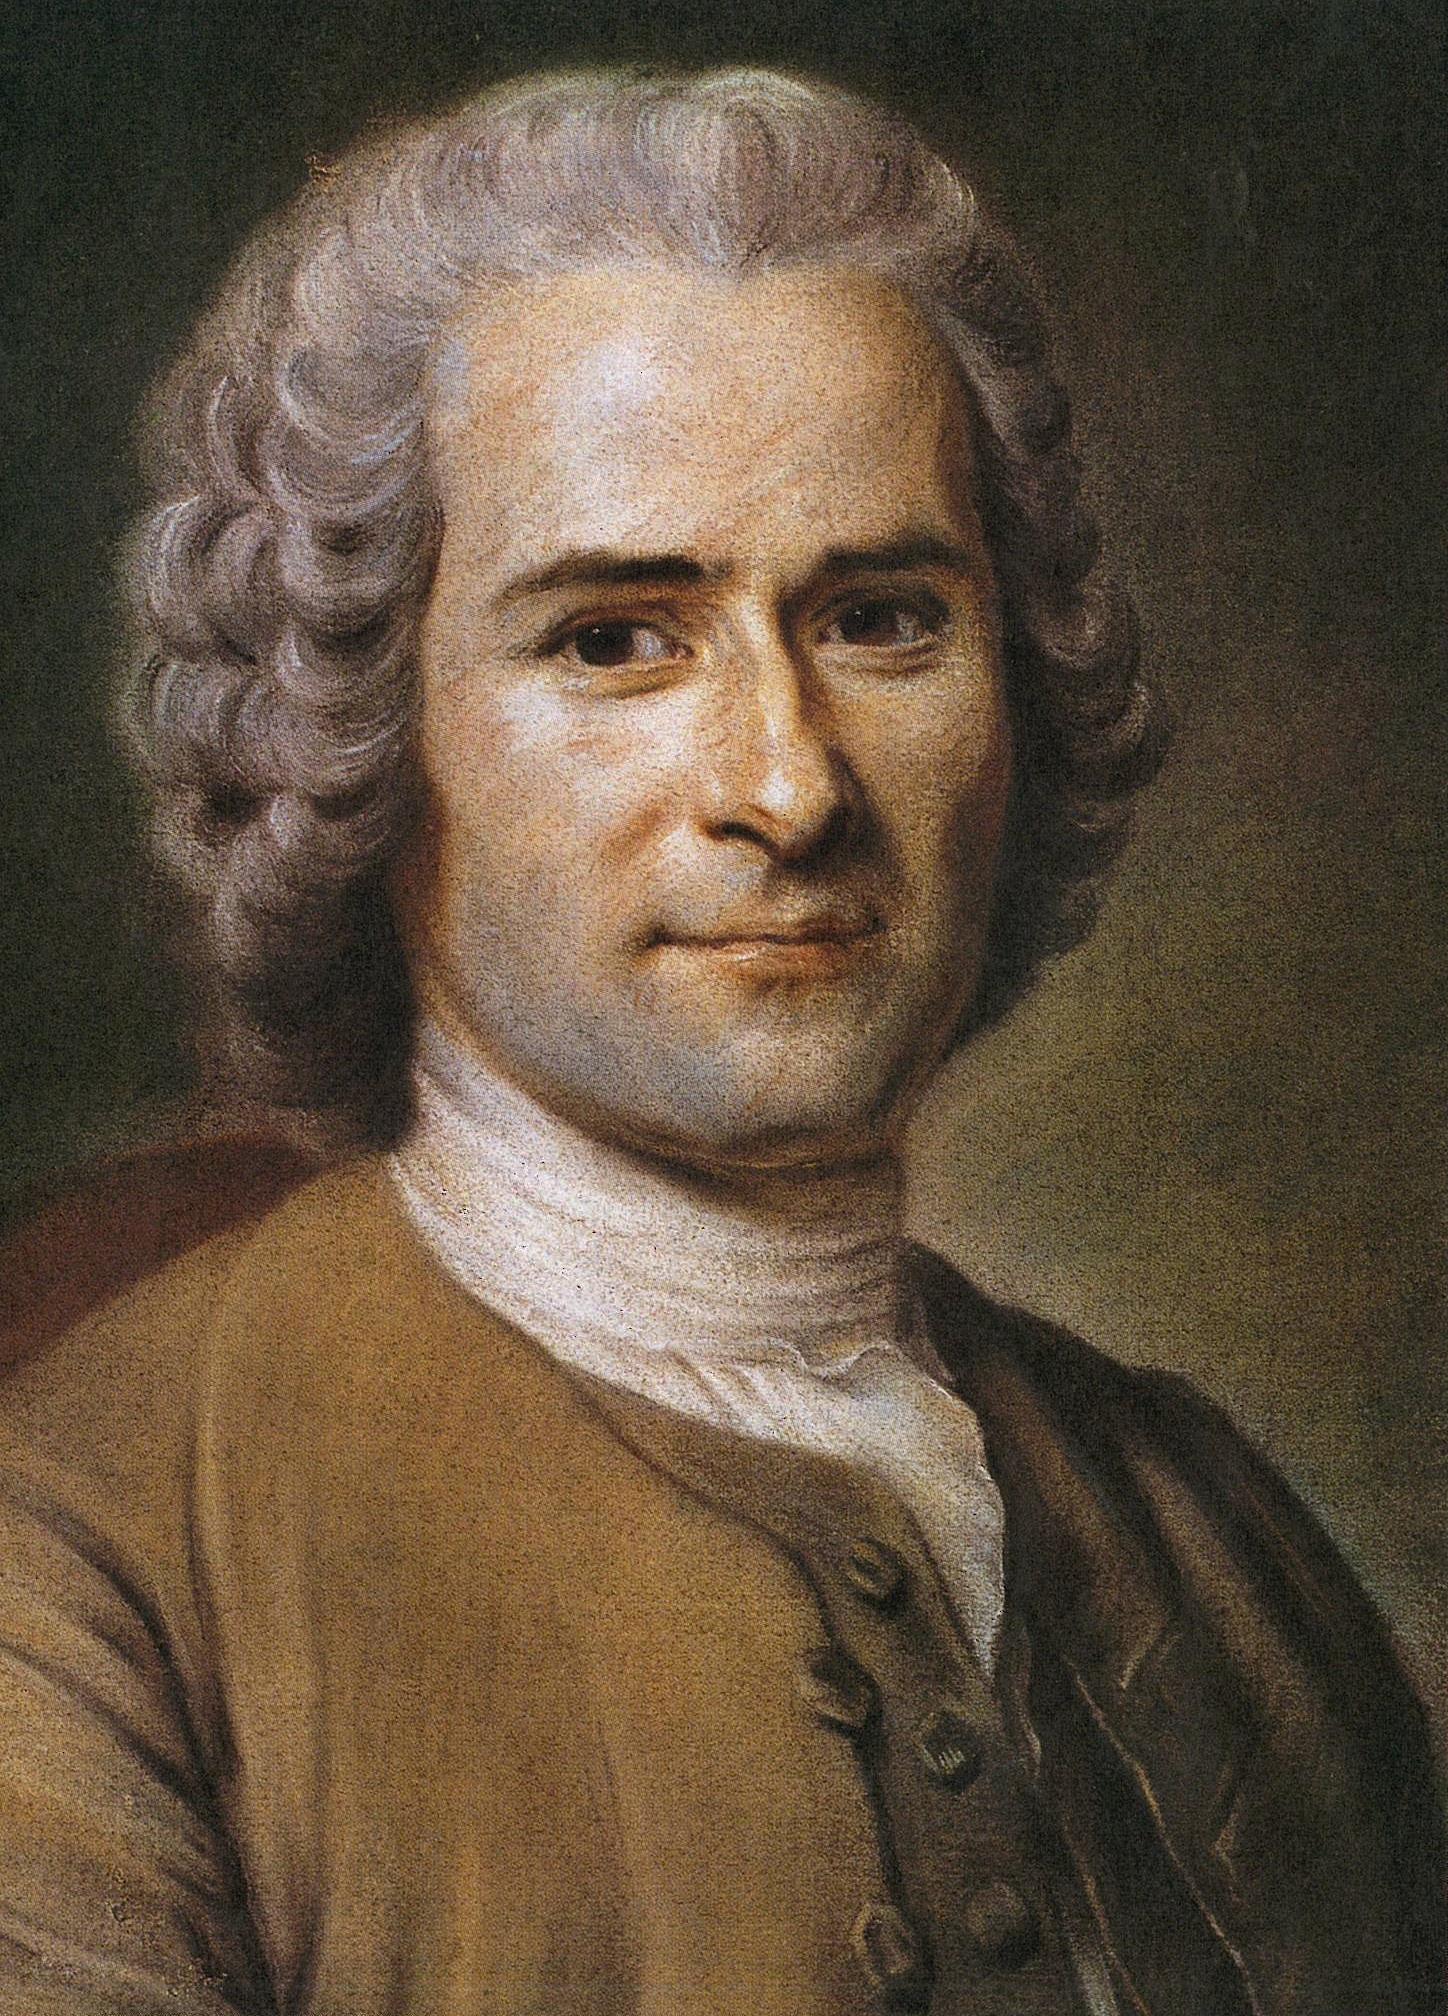 Portrait of Jean-Jacques Rousseau (1712-1778). Maurice Quentin de La Tour (1704-1788).